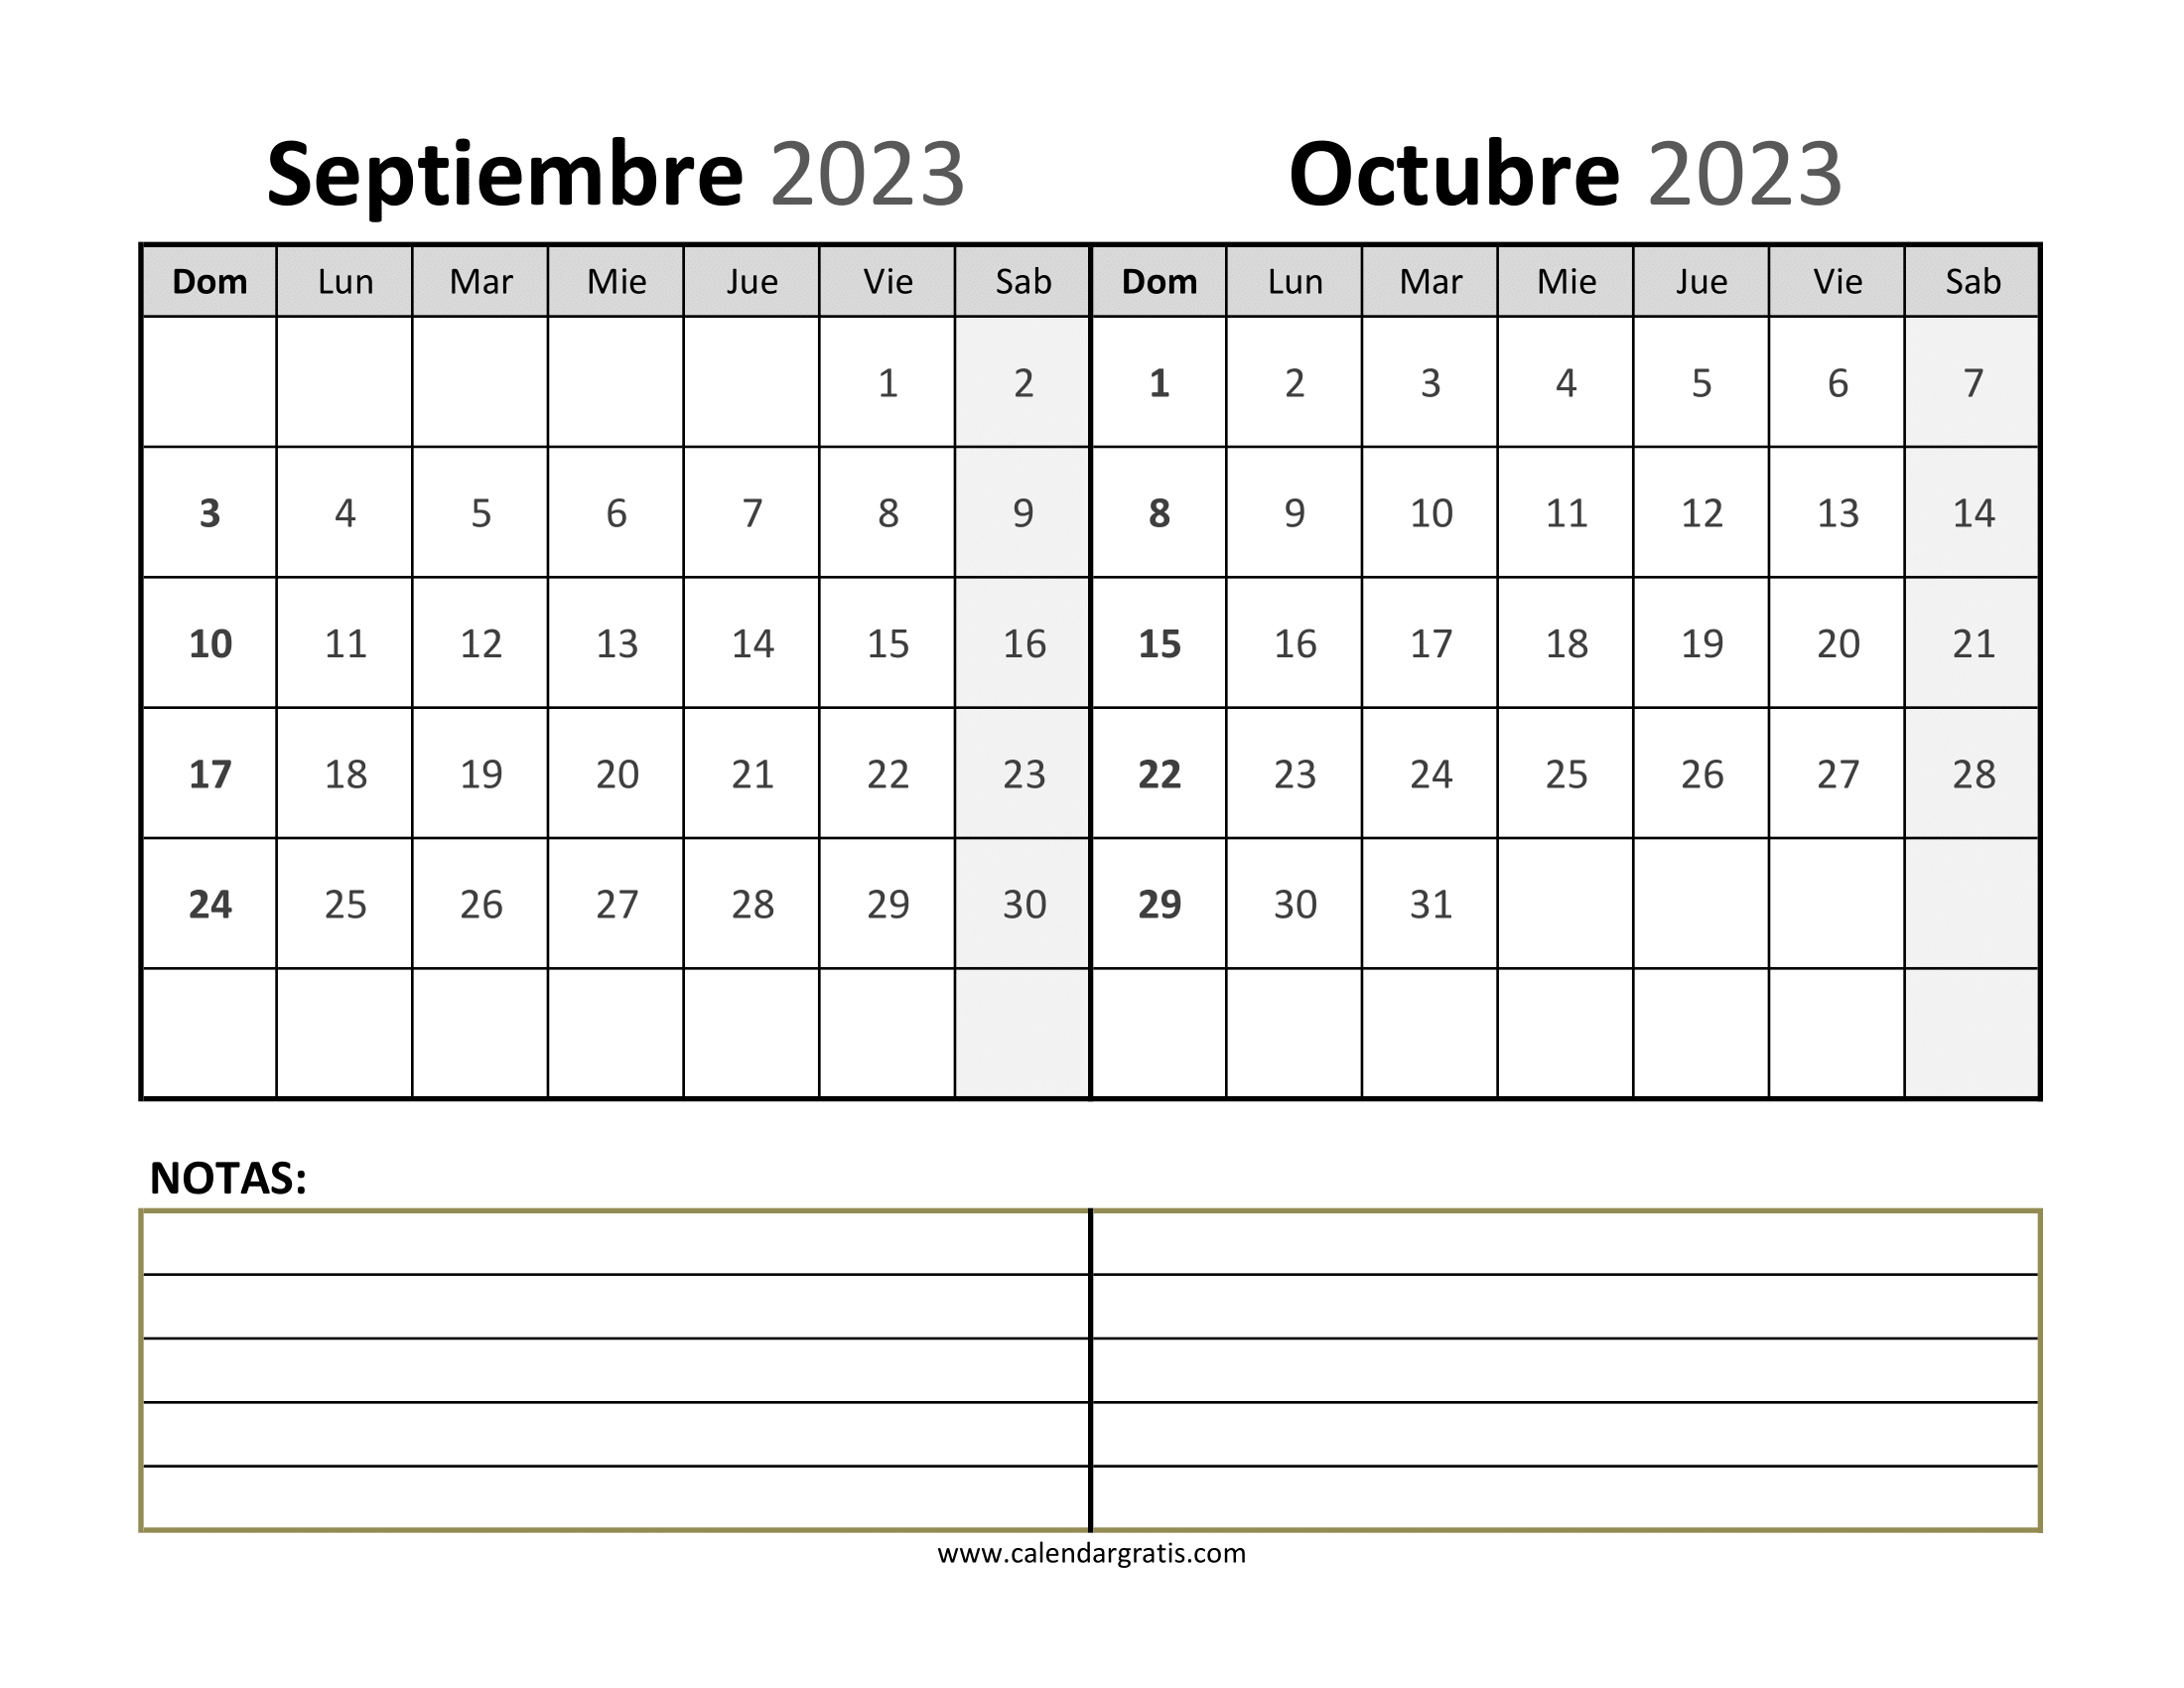 Calendario-Septiembre-y-Octubre-2023